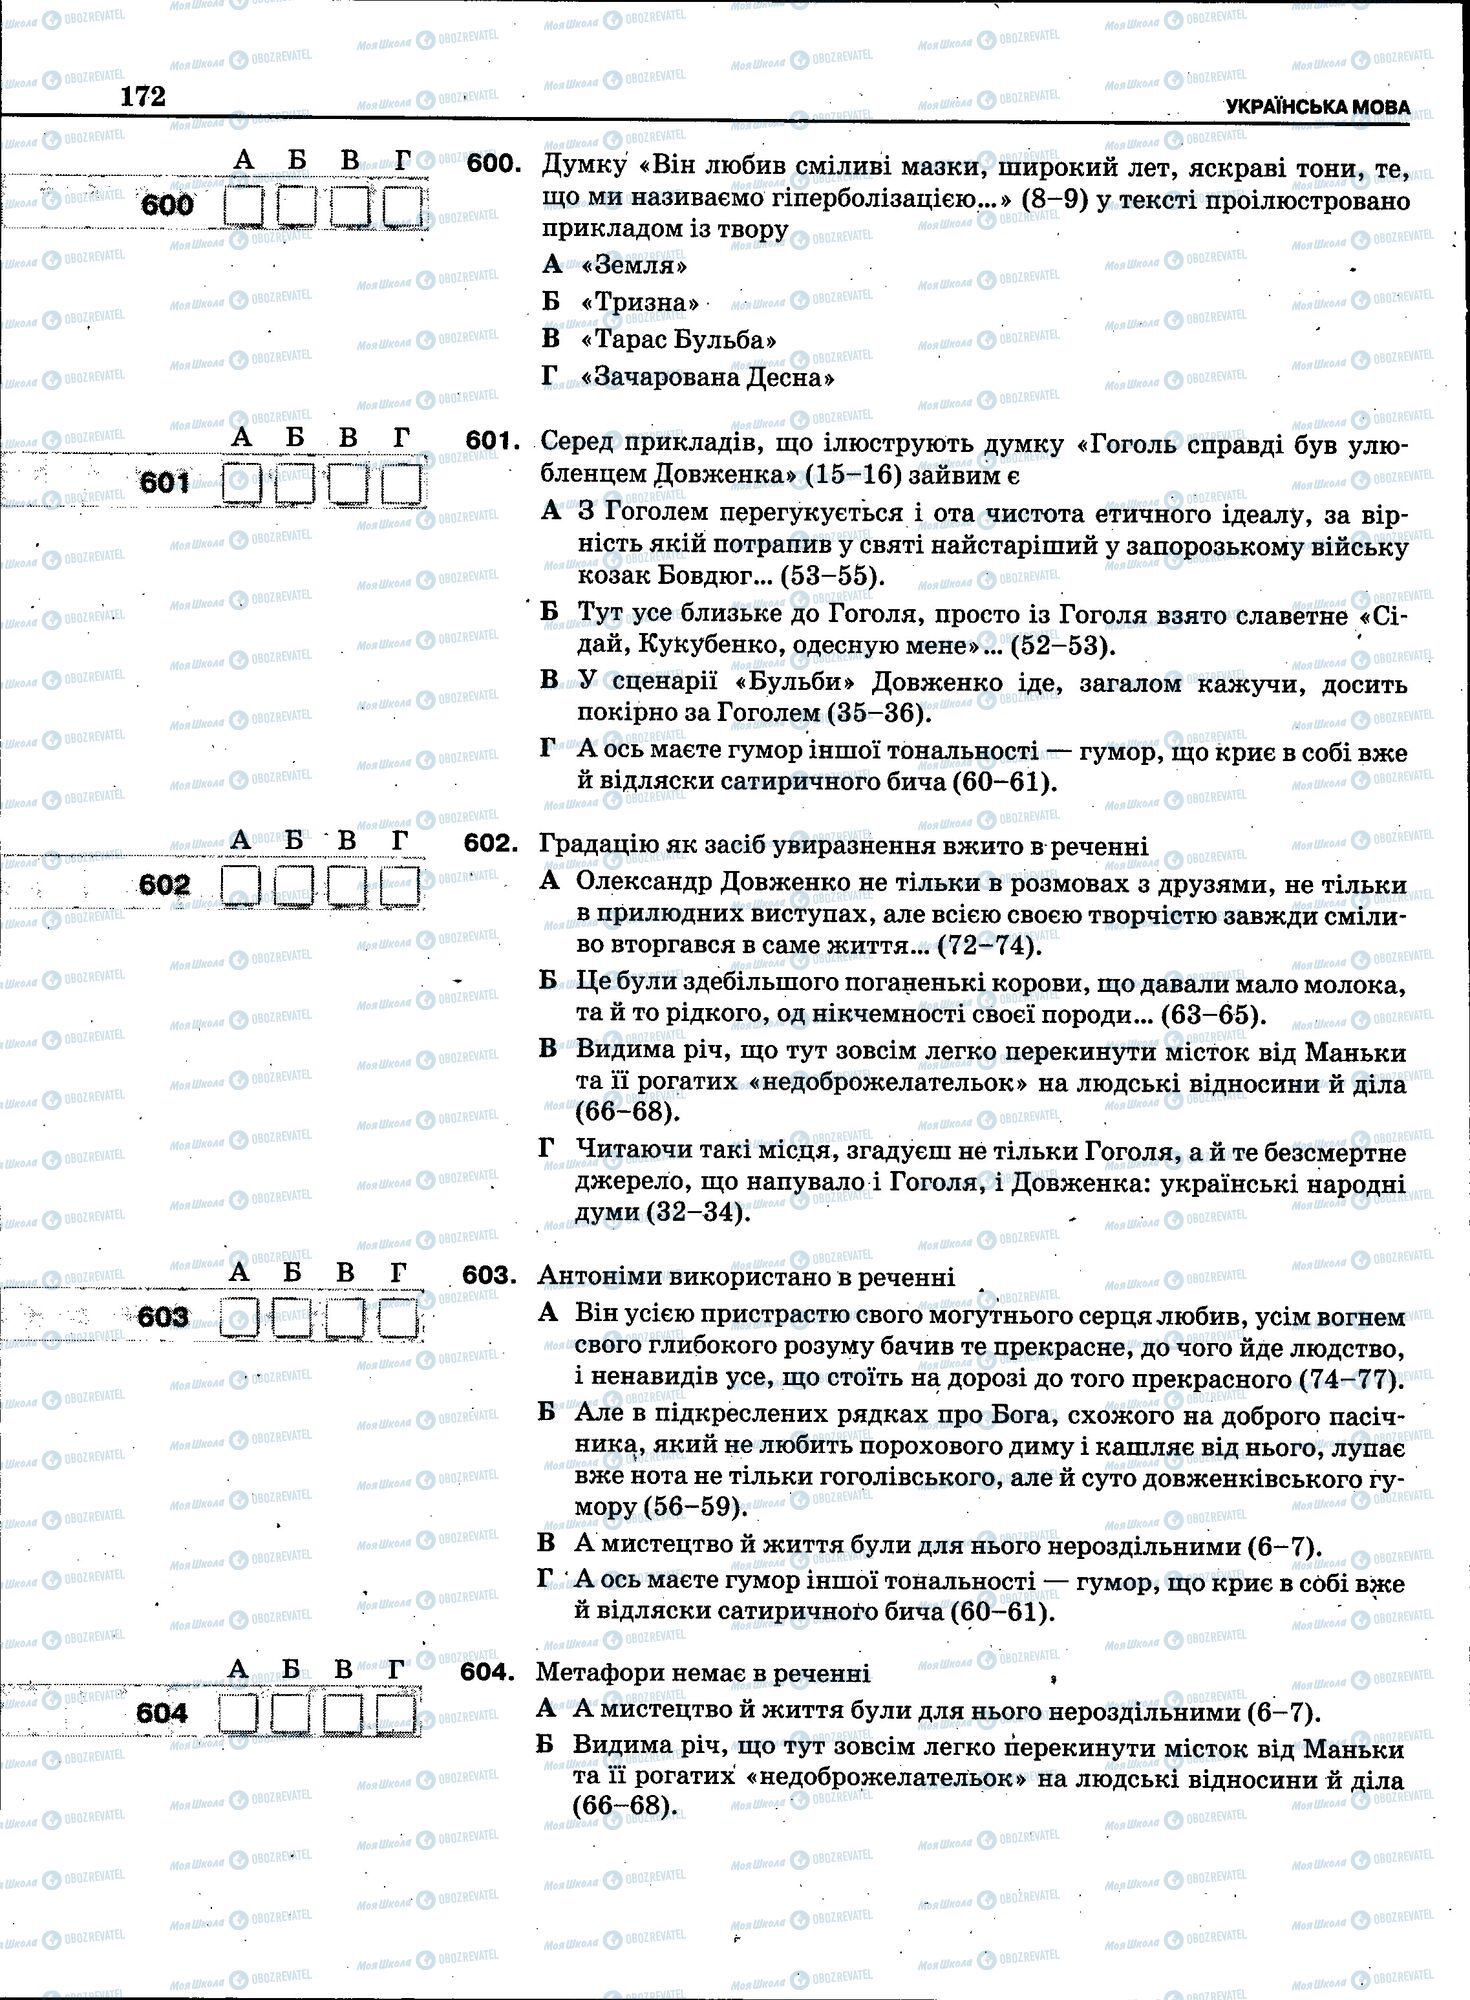 ЗНО Укр мова 11 класс страница 170